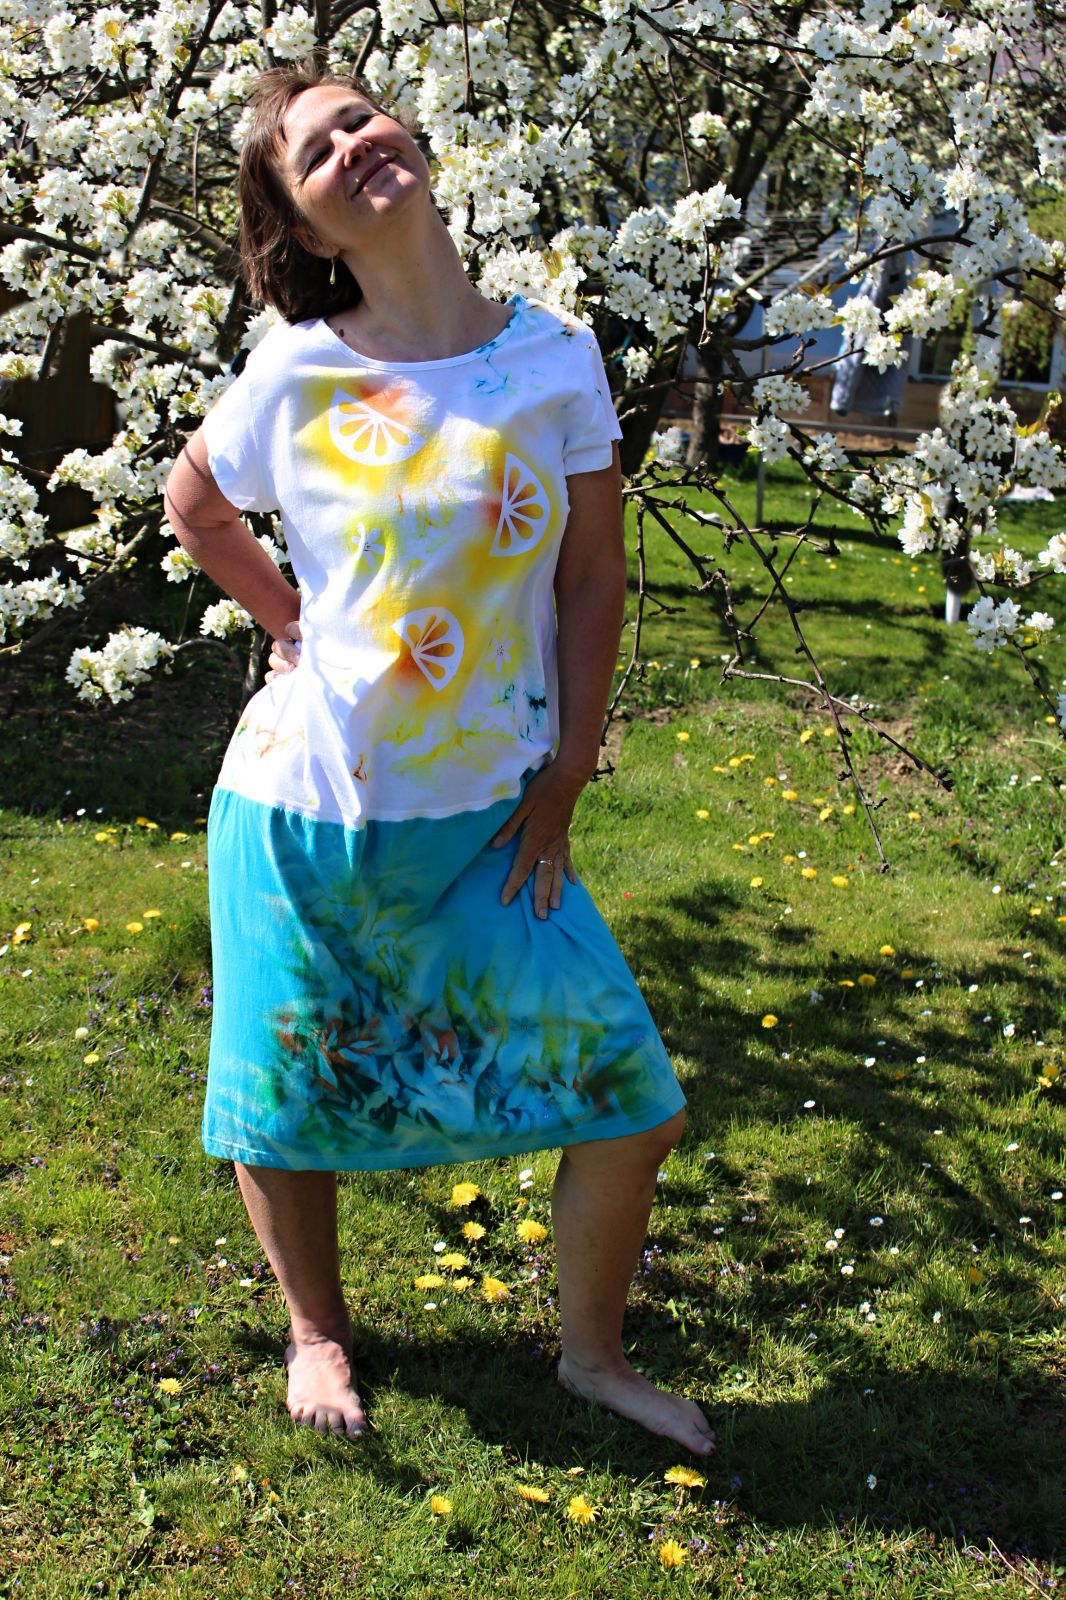 Malované batikované šaty - Citronáda, z autorské dílny z Olomouce - velikost XL Batitex - malovaná, batikovaná trička, šaty, mikiny, šátky, šály, kravaty